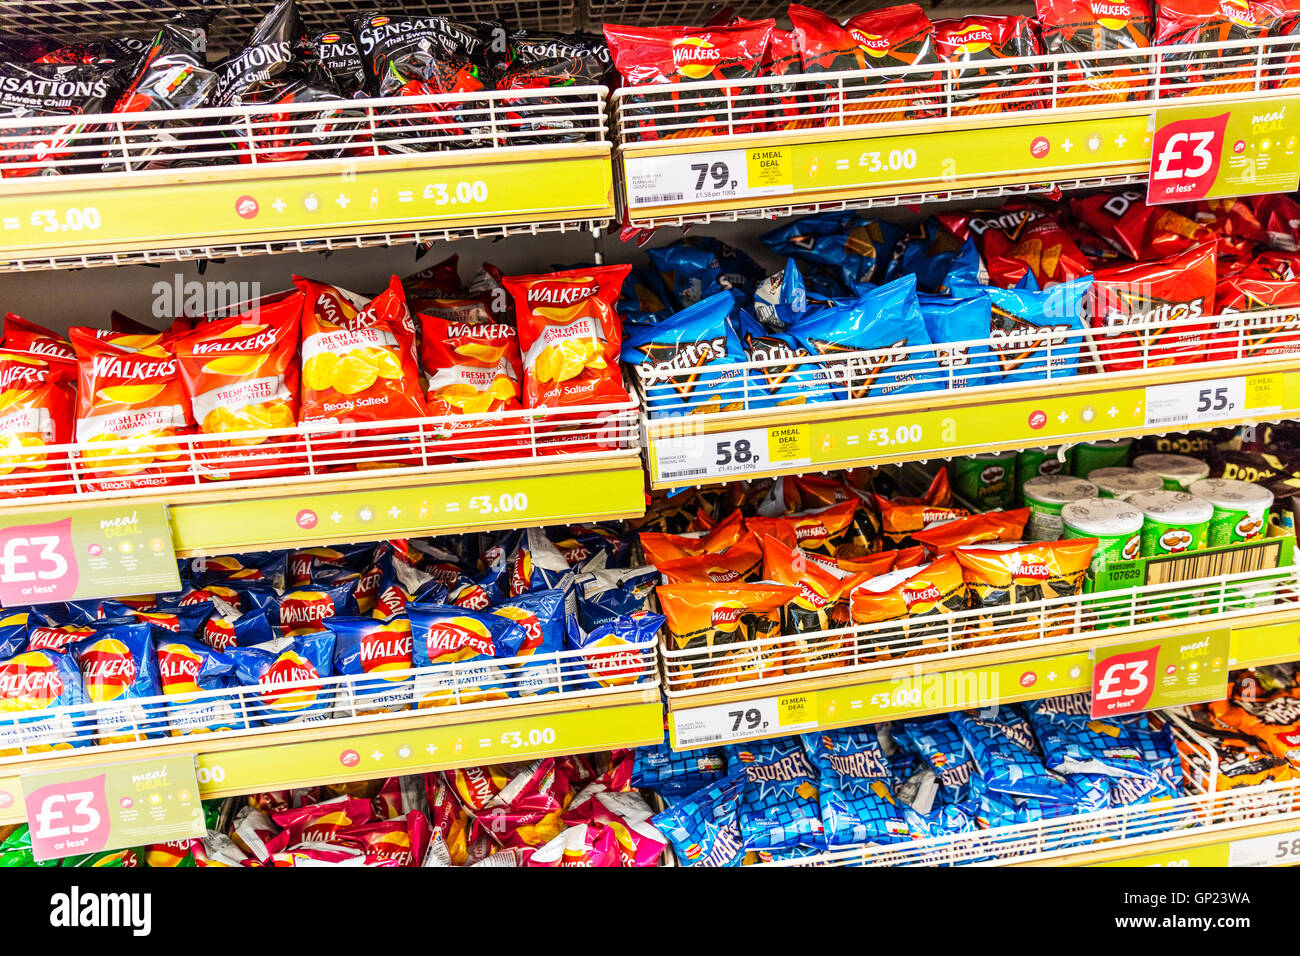 Walkers Crisps Pakete Supermarkt anzeigen Doritos Empfindungen, dass Chips stehen Supermärkte zeigt UK England GB Stockfoto